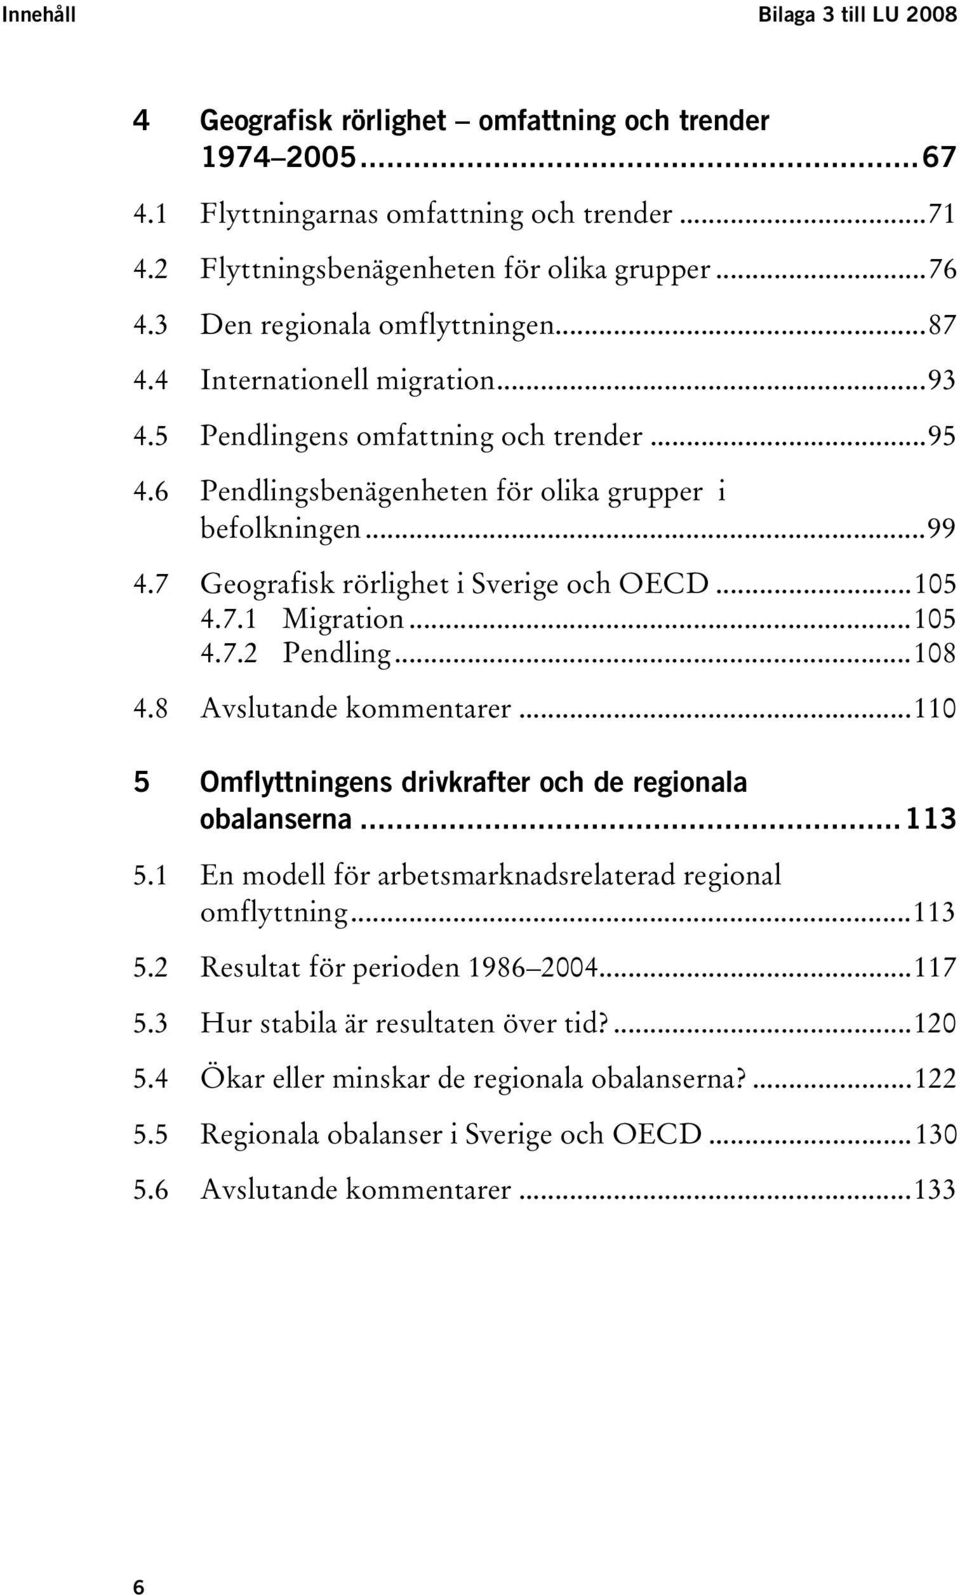 6UT TUPendlingsbenägenheten för olika grupper i befolkningenut...99 TU4.7UT TUGeografisk rörlighet i Sverige och OECDUT...105 TU4.7.1UT TUMigrationUT...105 TU4.7.2UT TUPendlingUT...108 TU4.